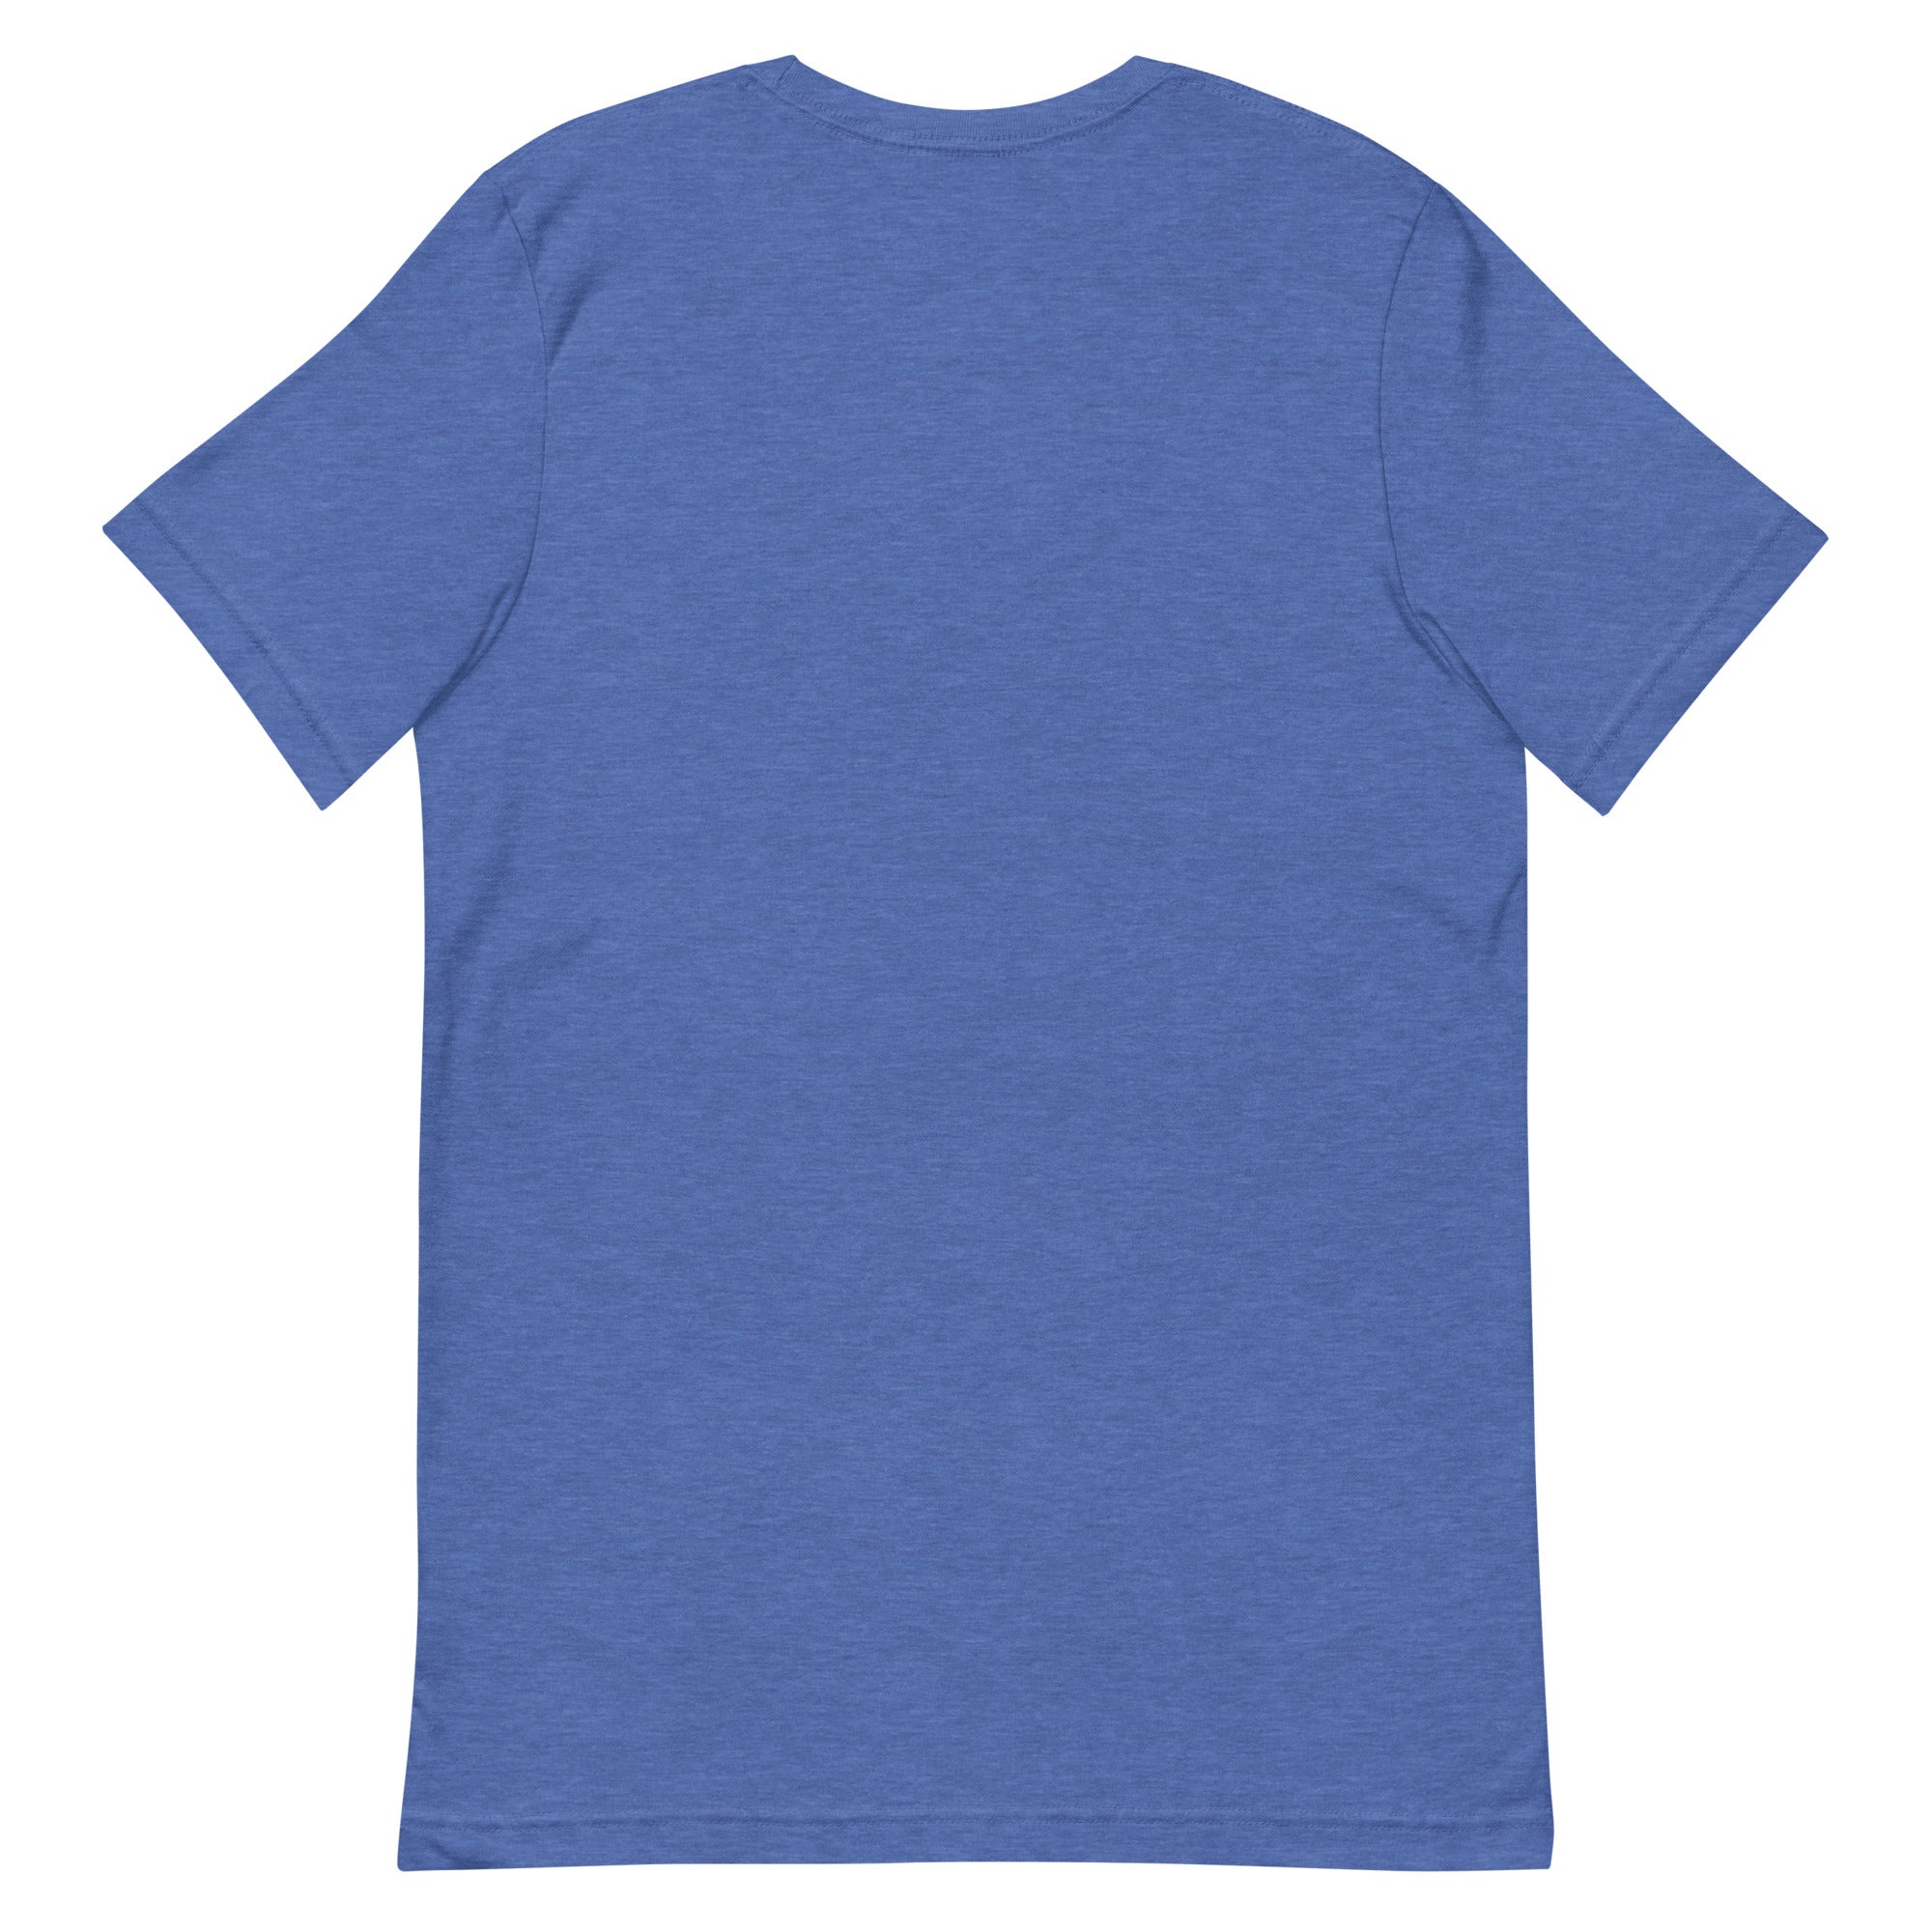 Mainland Maui "Soulsetter" Men's/Unisex T-Shirt